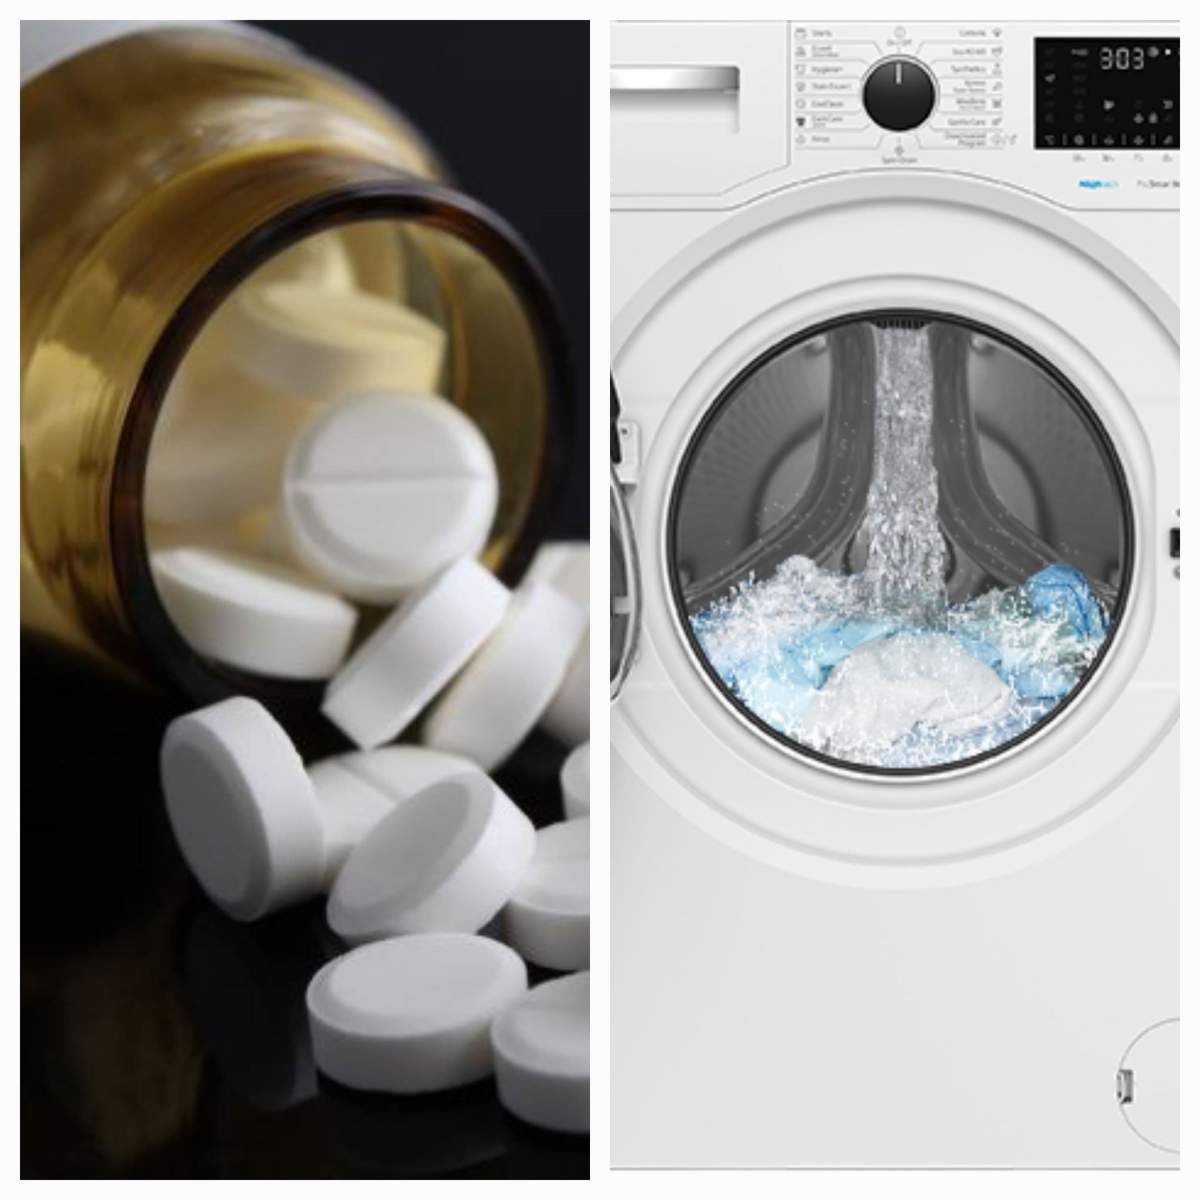 Ce se întâmplă dacă pui o aspirină în mașina de spălat. Trucul e genial